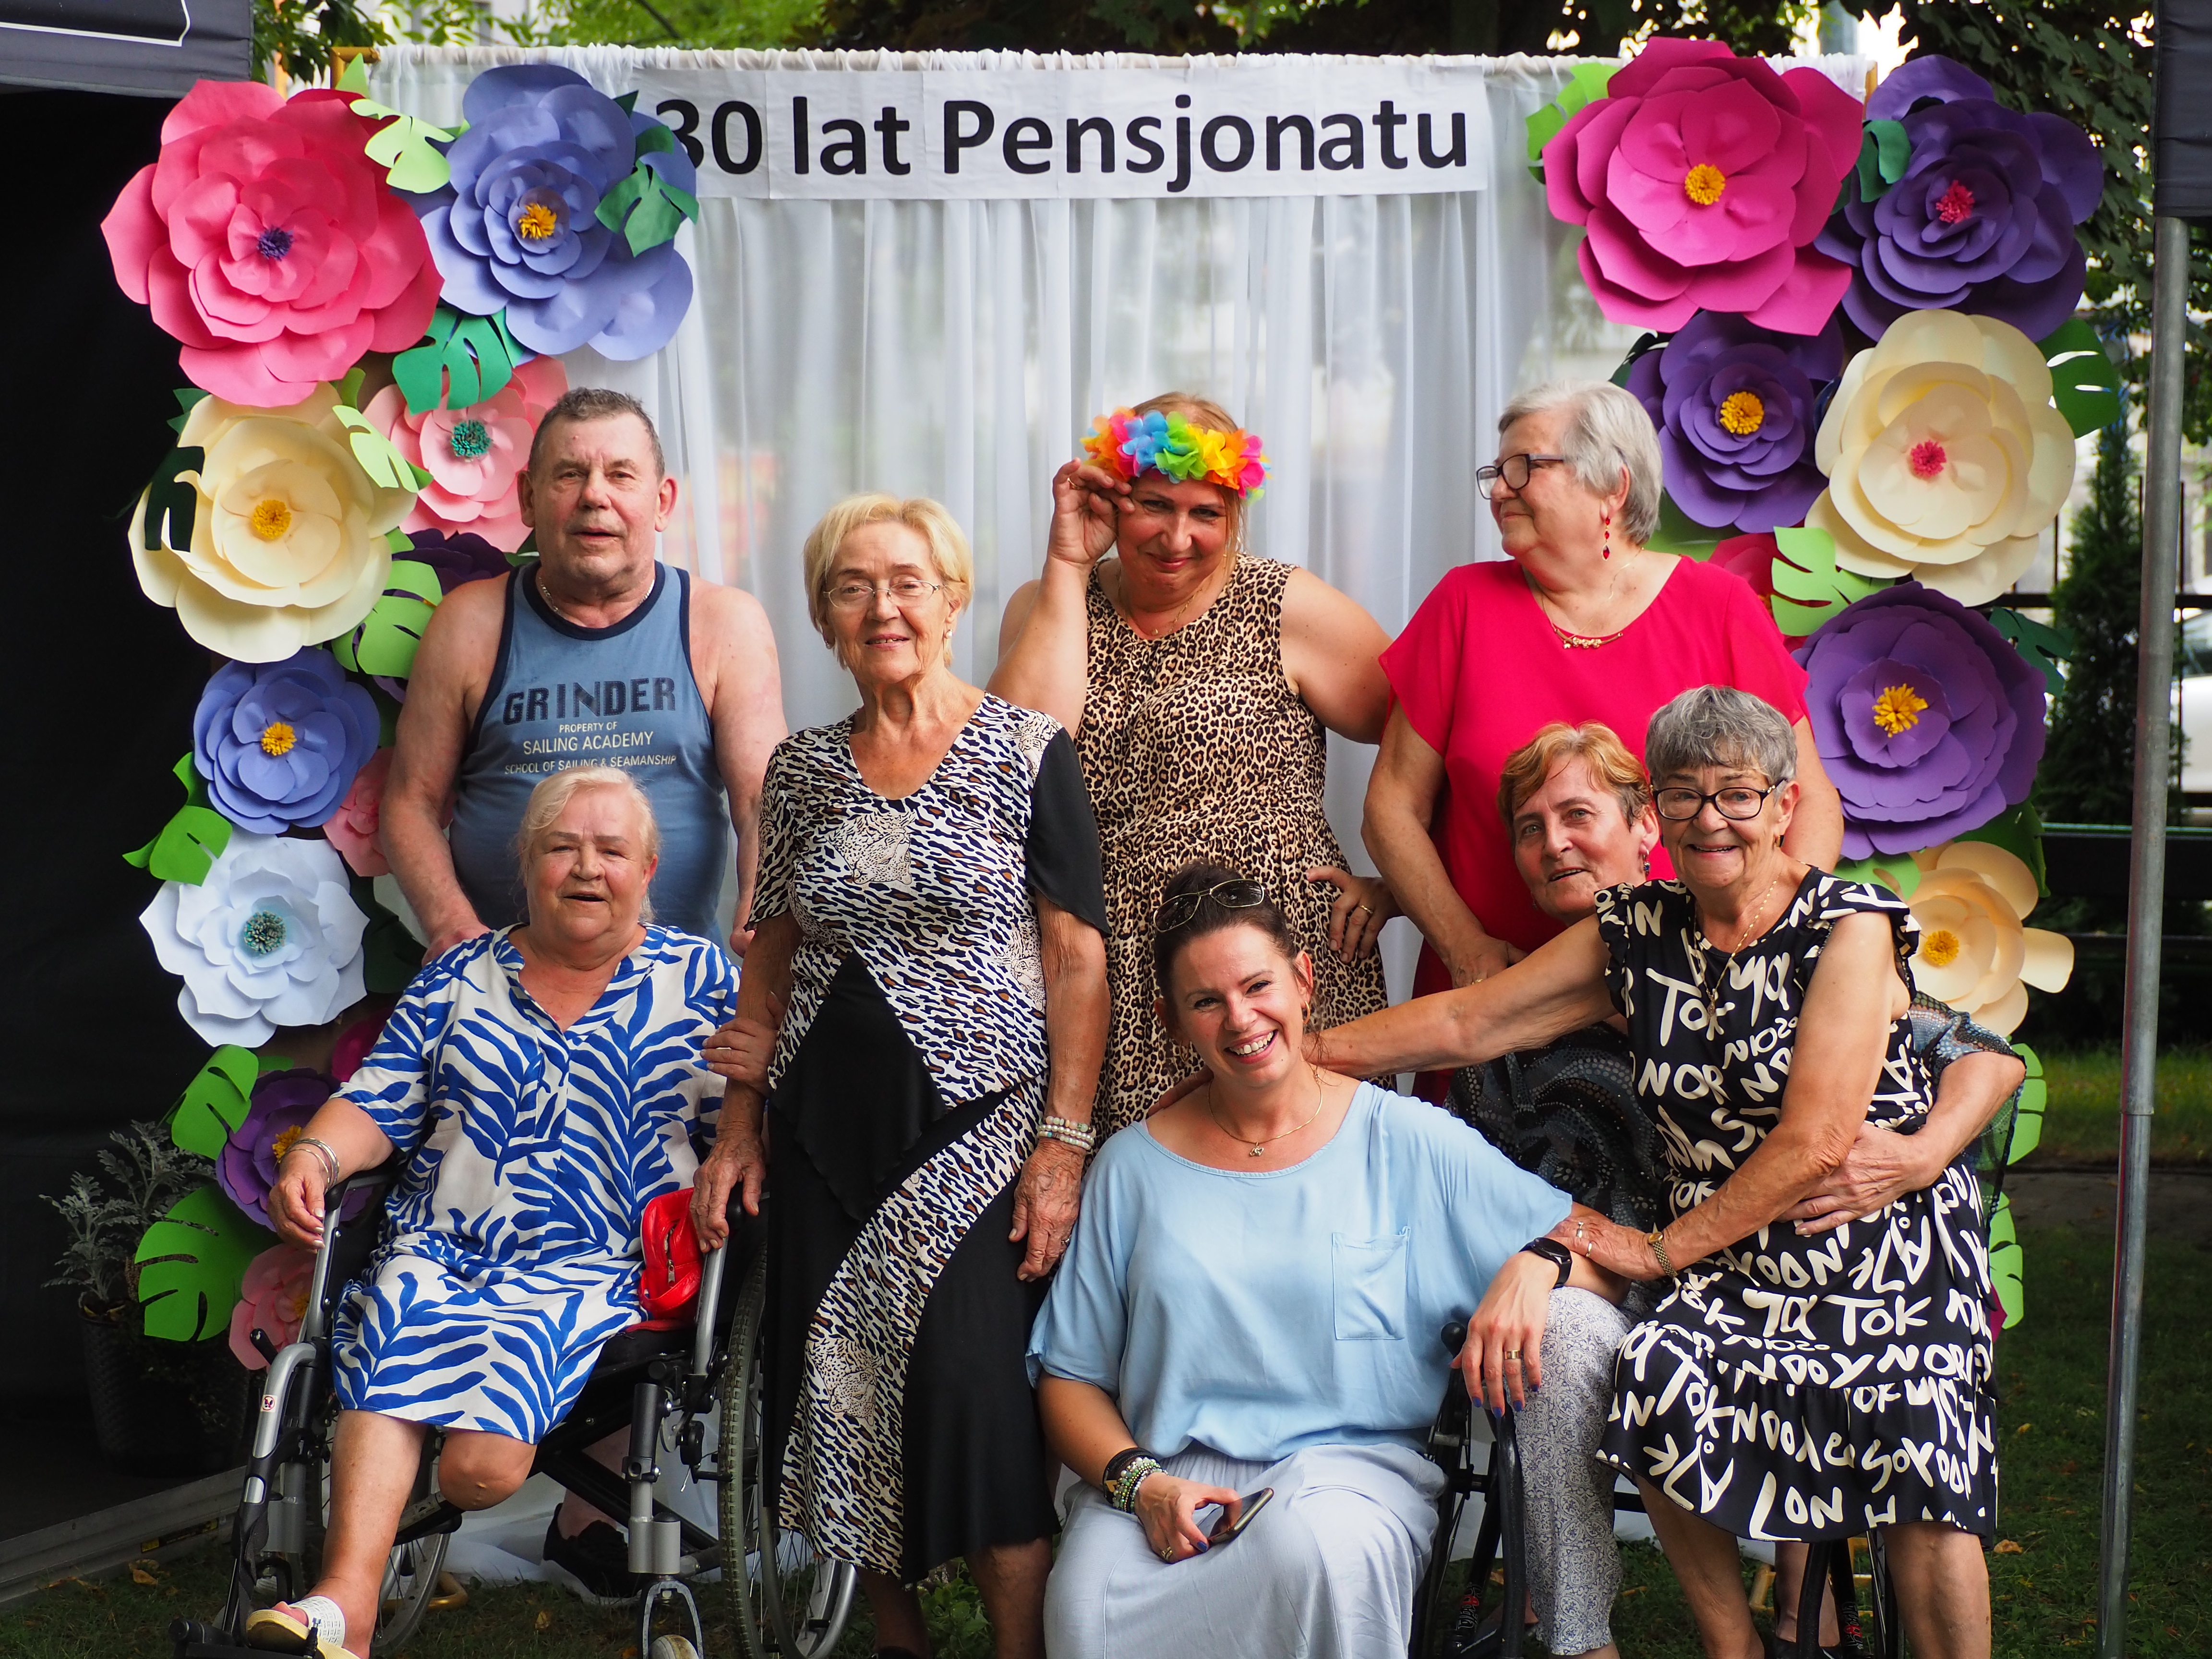 9 osób w kolorowych ubraniach pozuje na tle ozdobnego napisu 30 lat pensjonatu oraz sztucznych kwiatow.